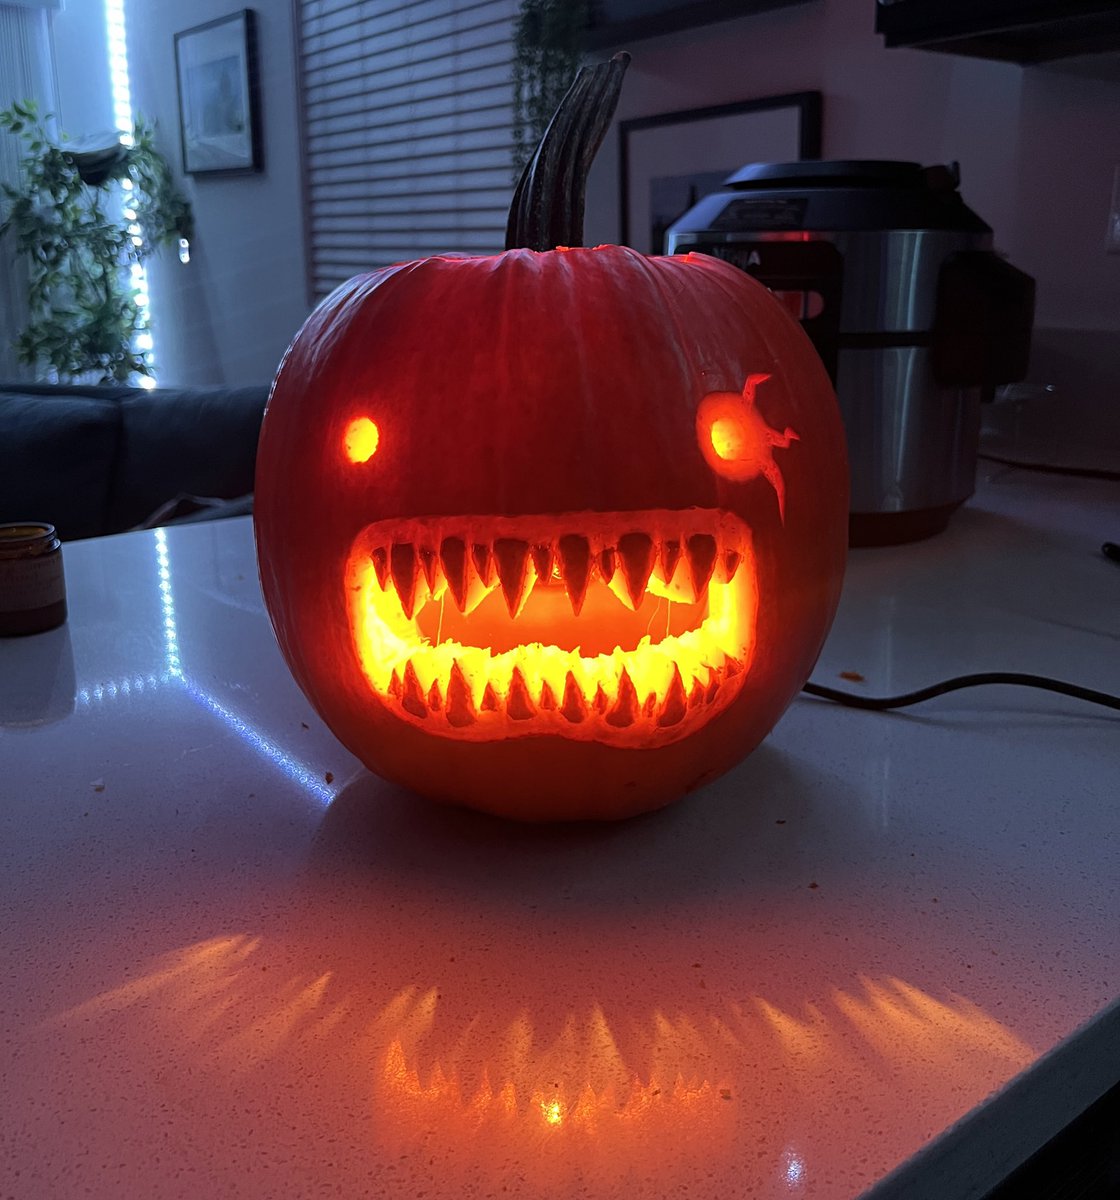 Made a Jack-O-Lantern, happy spooky time